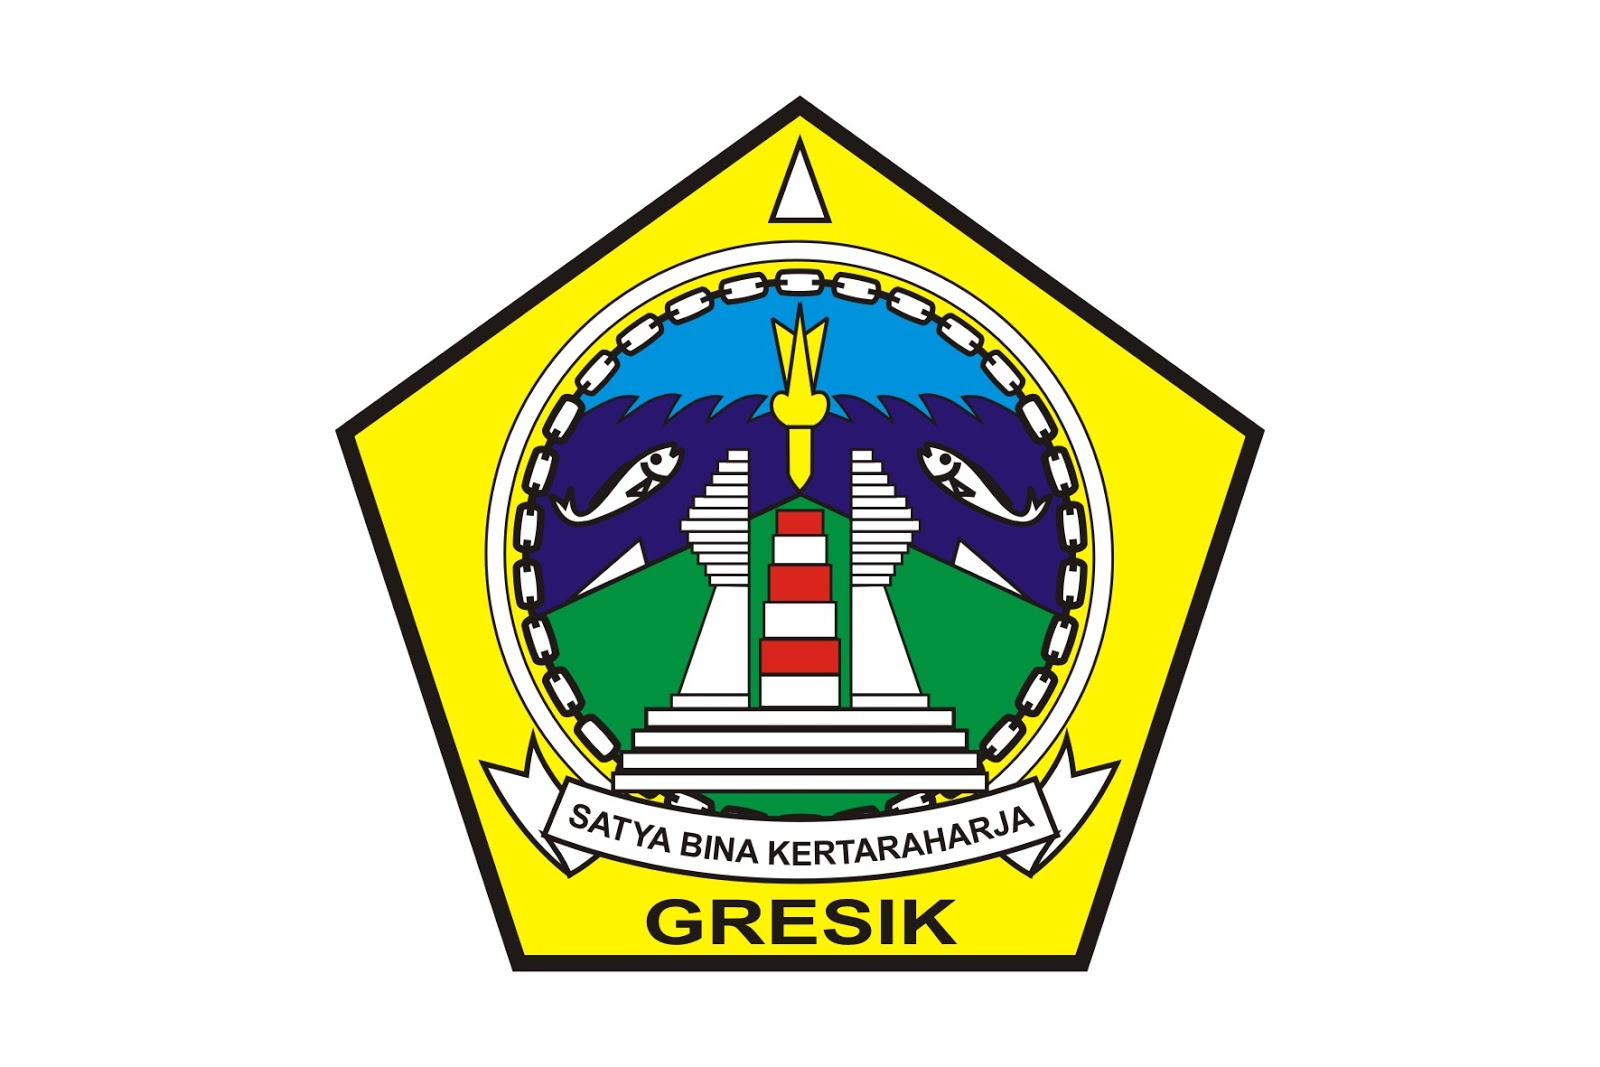 Kabupaten Gresik Logo